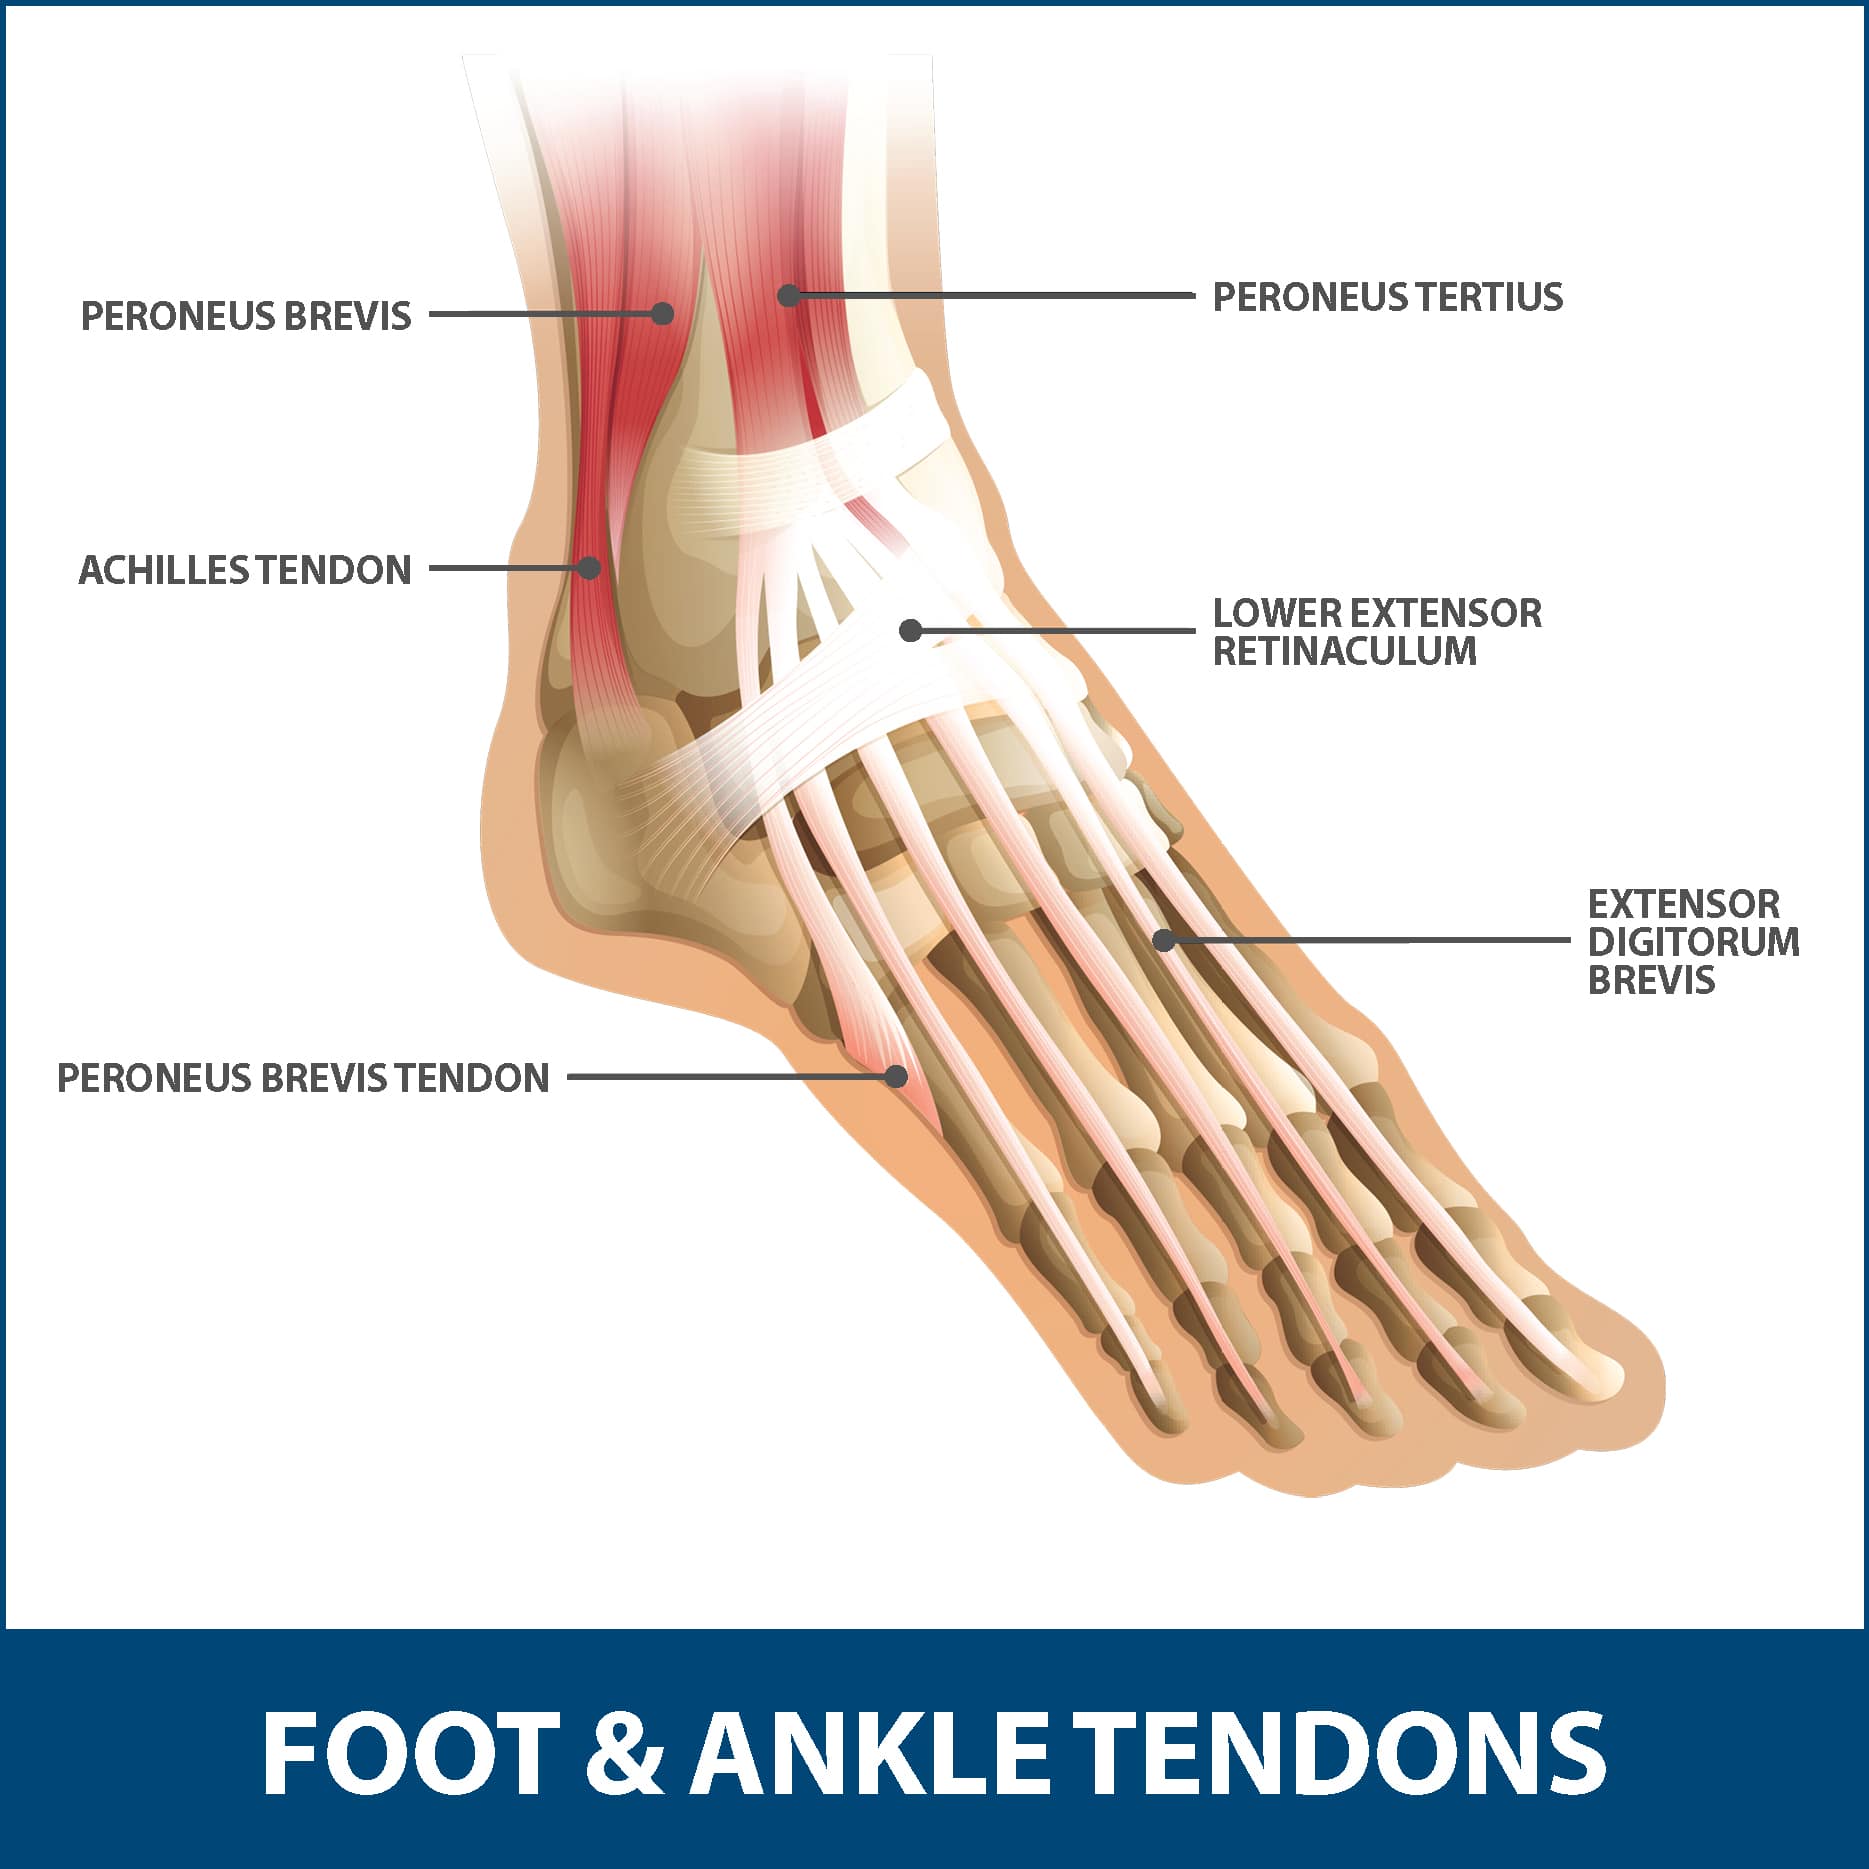 Achilles Tendon Pain: Causes, Symptoms and Treatment